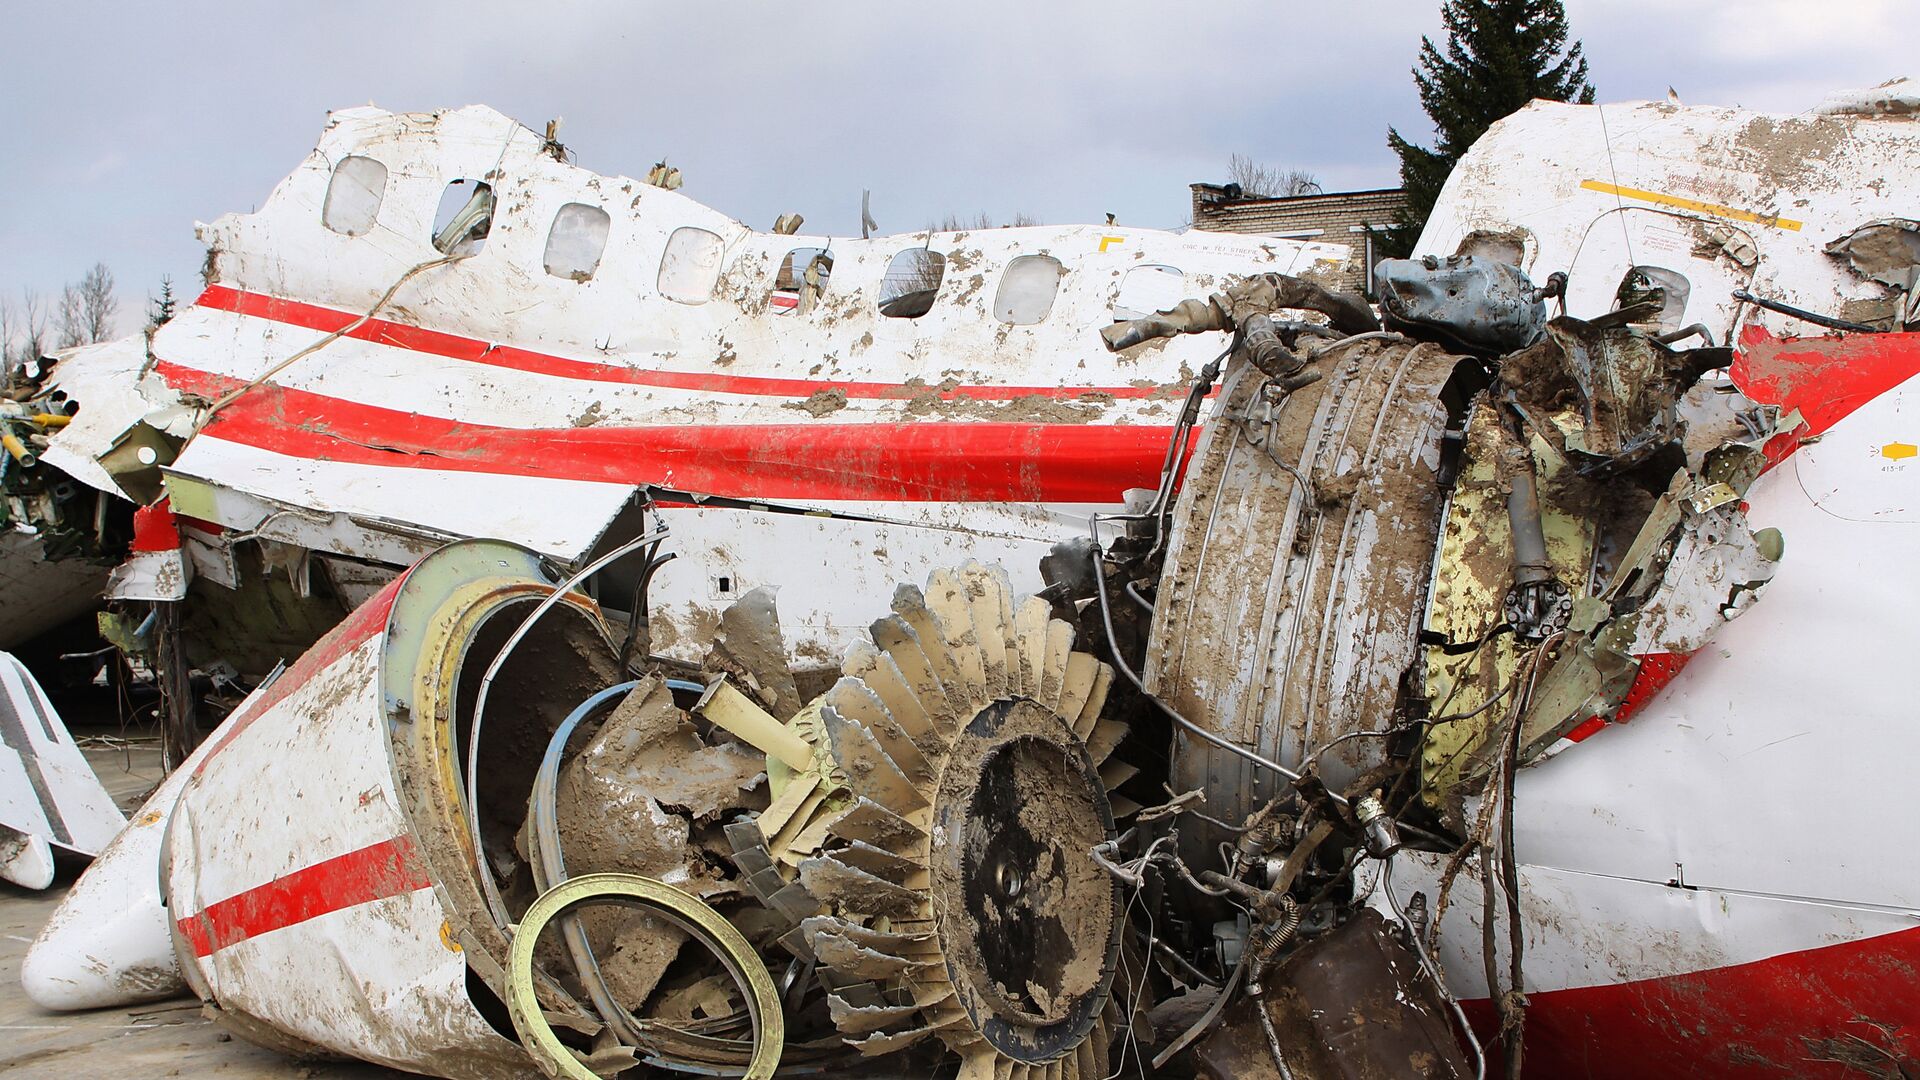 Обломки польского правительственного самолета Ту-154 на охраняемой площадке аэродрома в Смоленске - РИА Новости, 1920, 08.06.2017